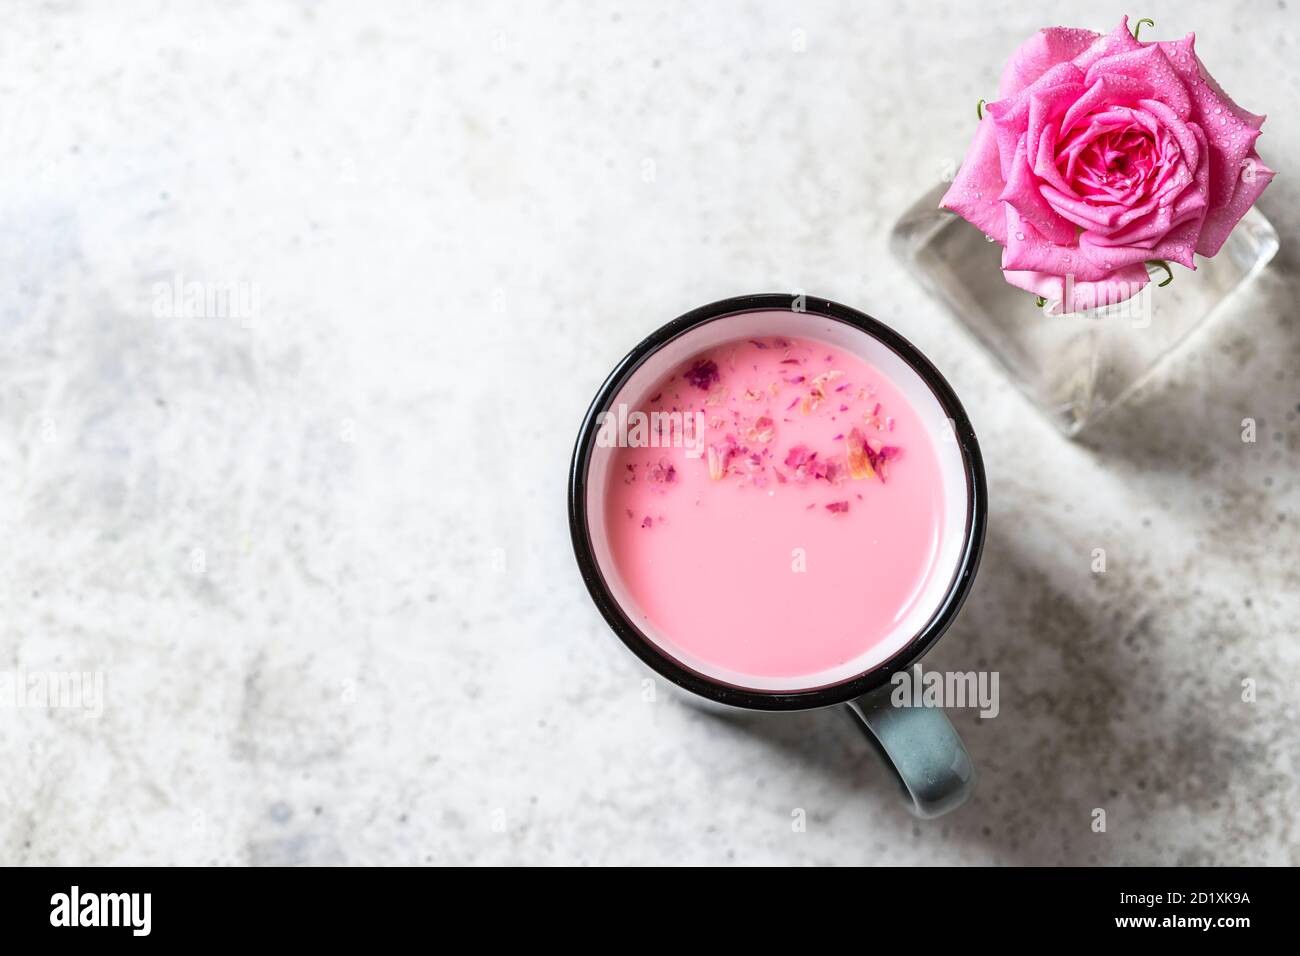 Latte ayurvedico di luna di rosa. Una forma trendy e rilassante di drink prima di letto. Latte con petali di rosa in una tazza grigia su un fondo di cemento chiaro. Foto Stock